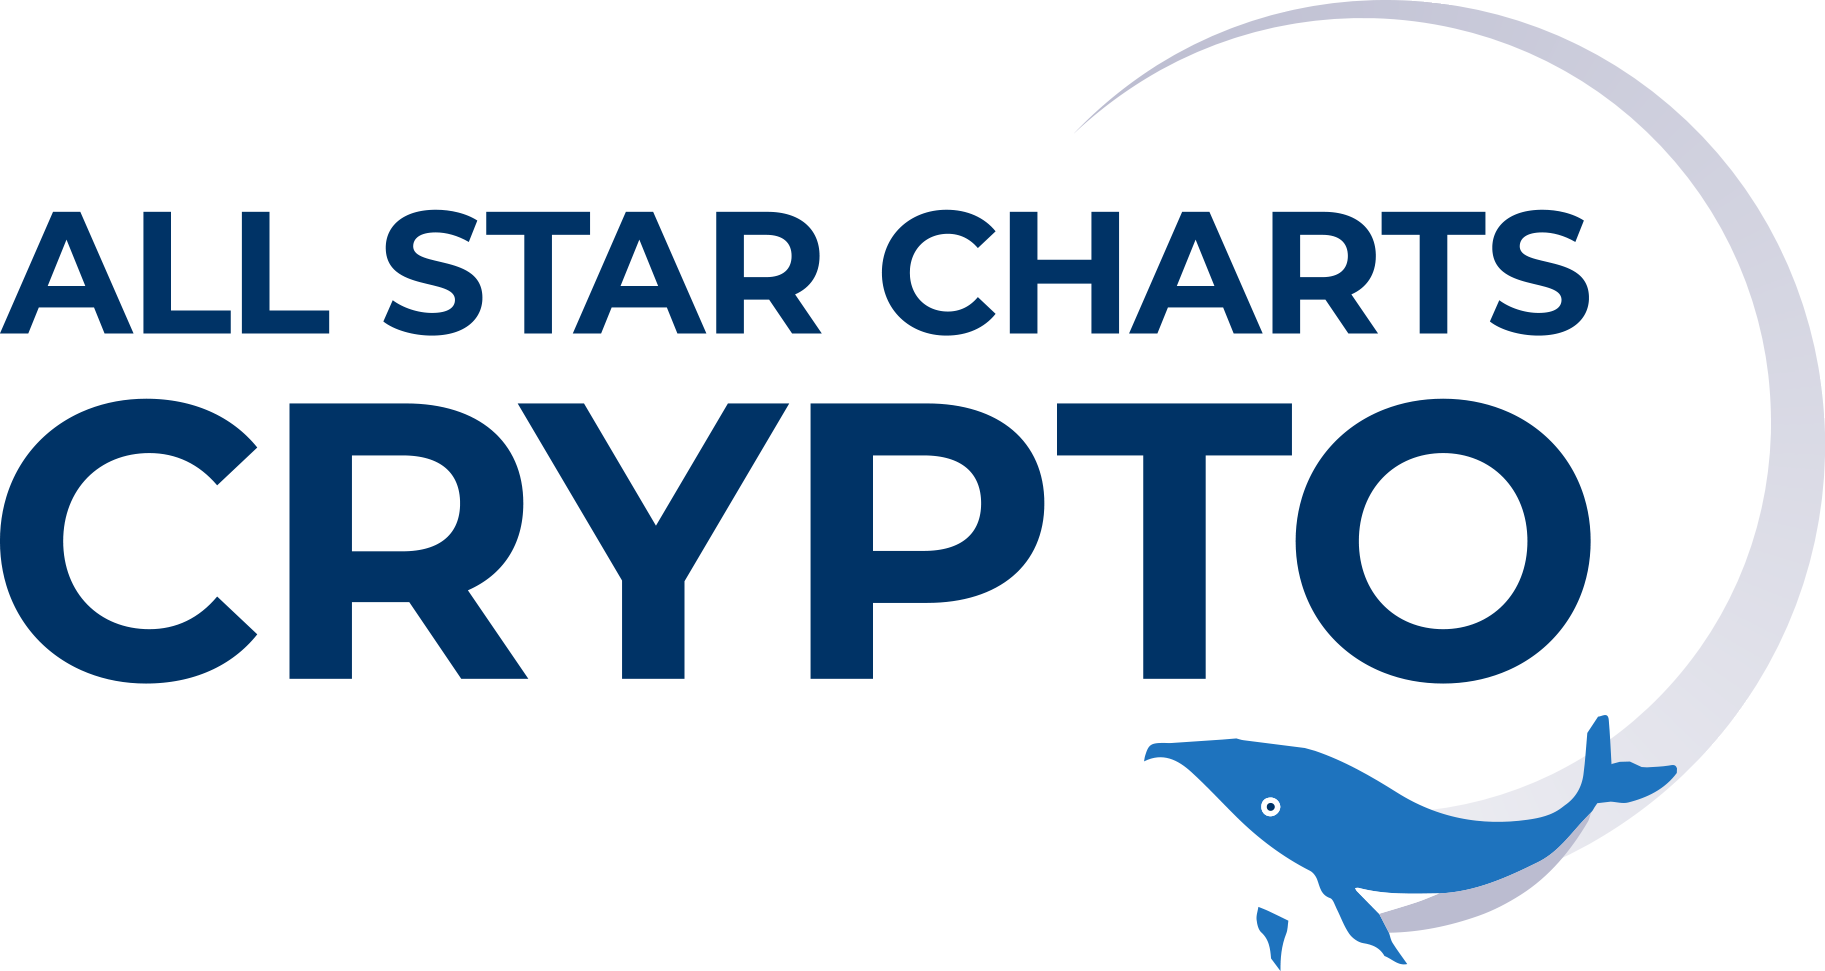 All Star Charts Crypto